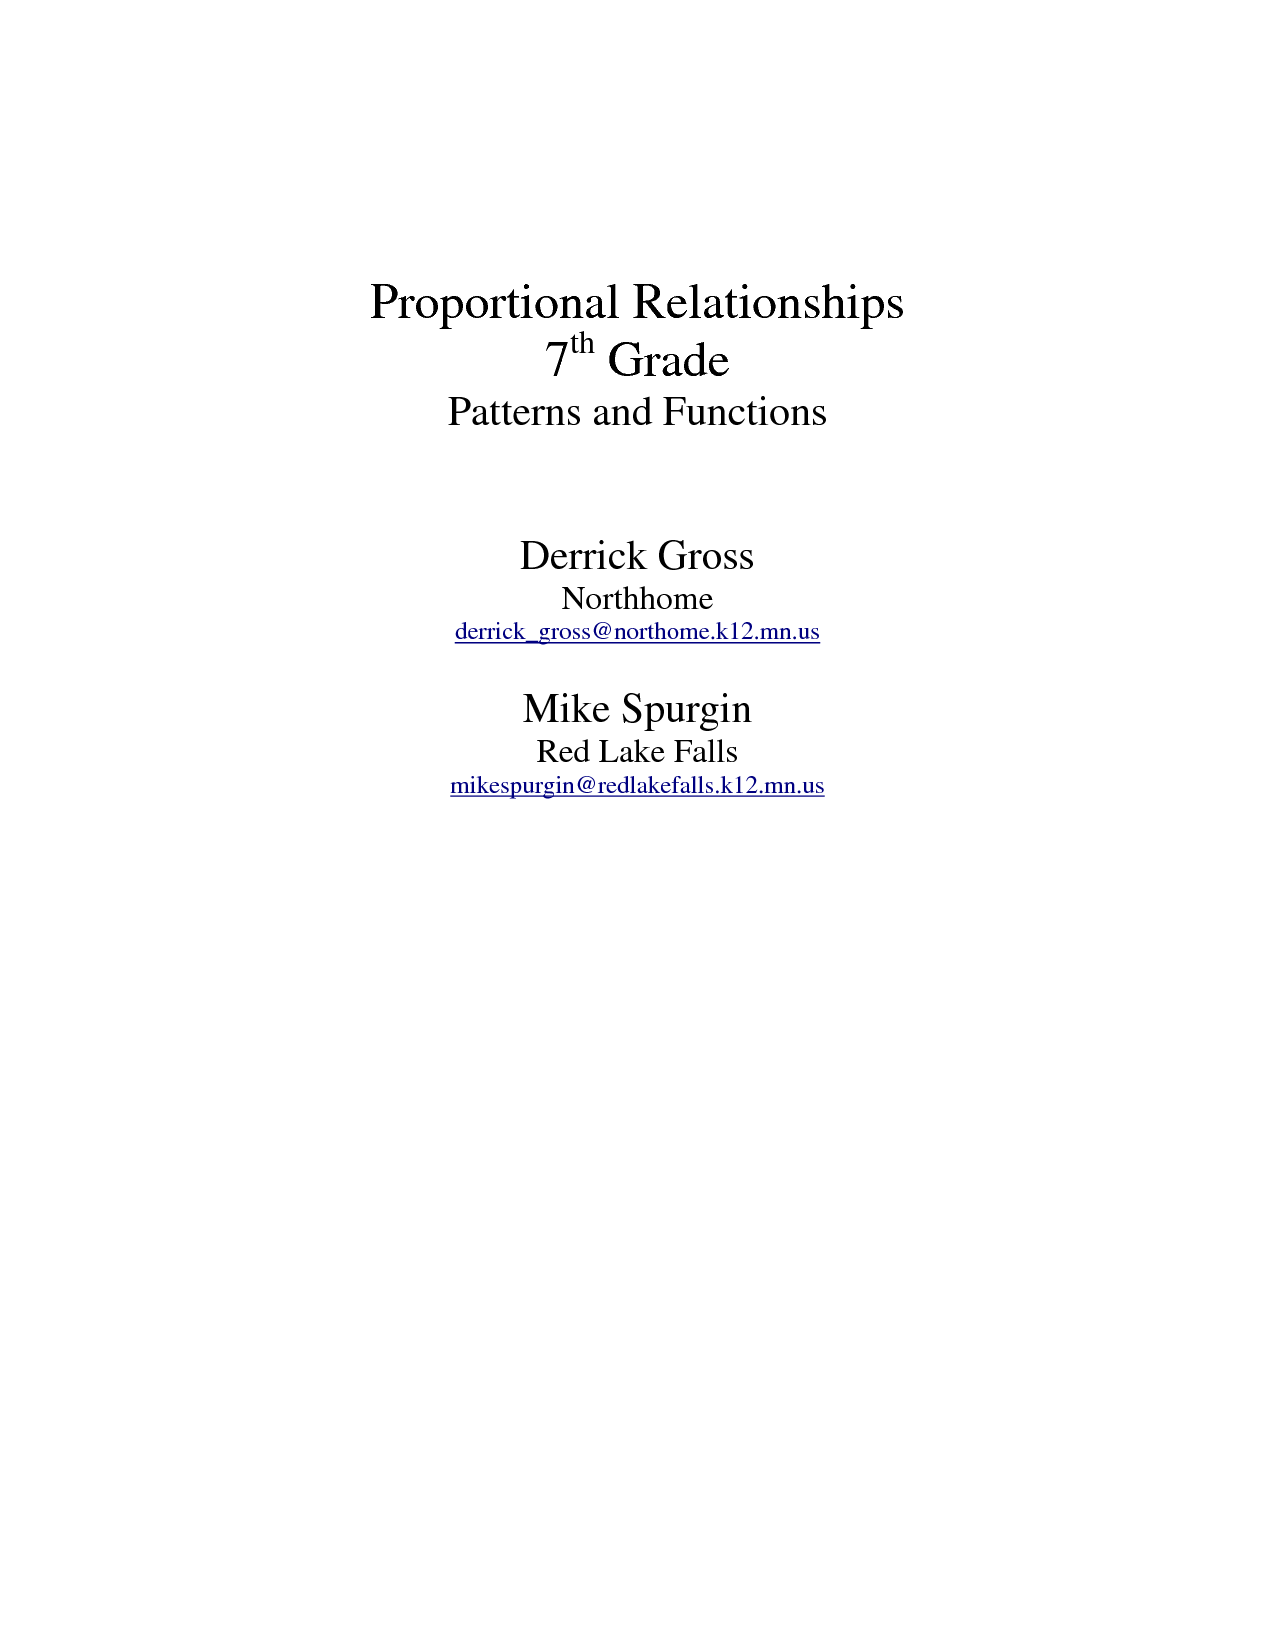 7th Grade Proportional Relationships Worksheet Image